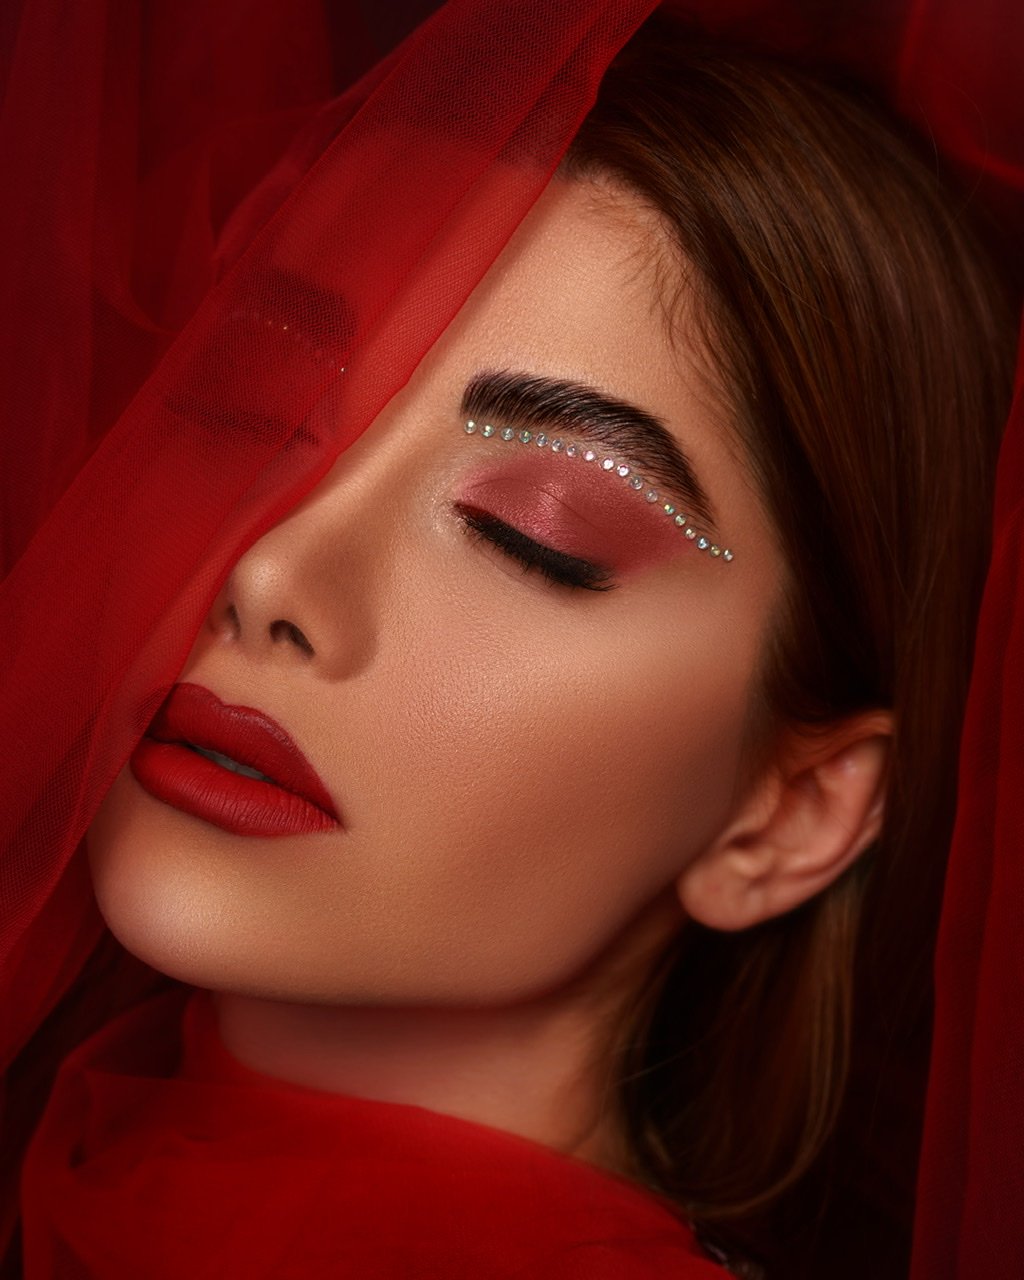 #red #beauty #iran #portrait #iran #makeup, amir seilsepour